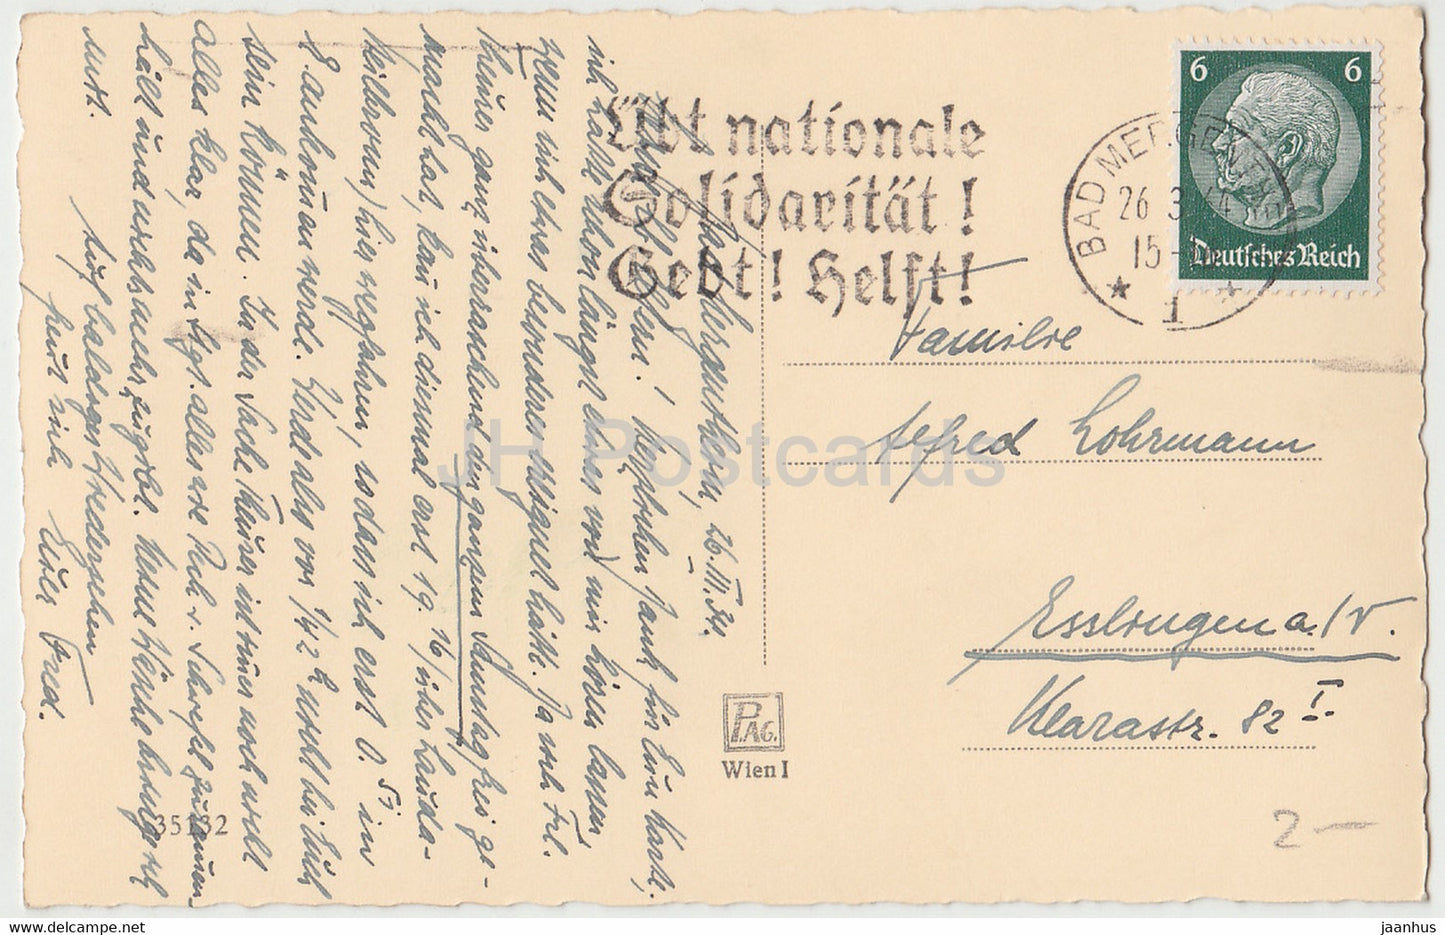 Carte de vœux de Pâques - Gesegnete Ostern - route de campagne - 35132 - carte postale ancienne - 1934 - Autriche - utilisé